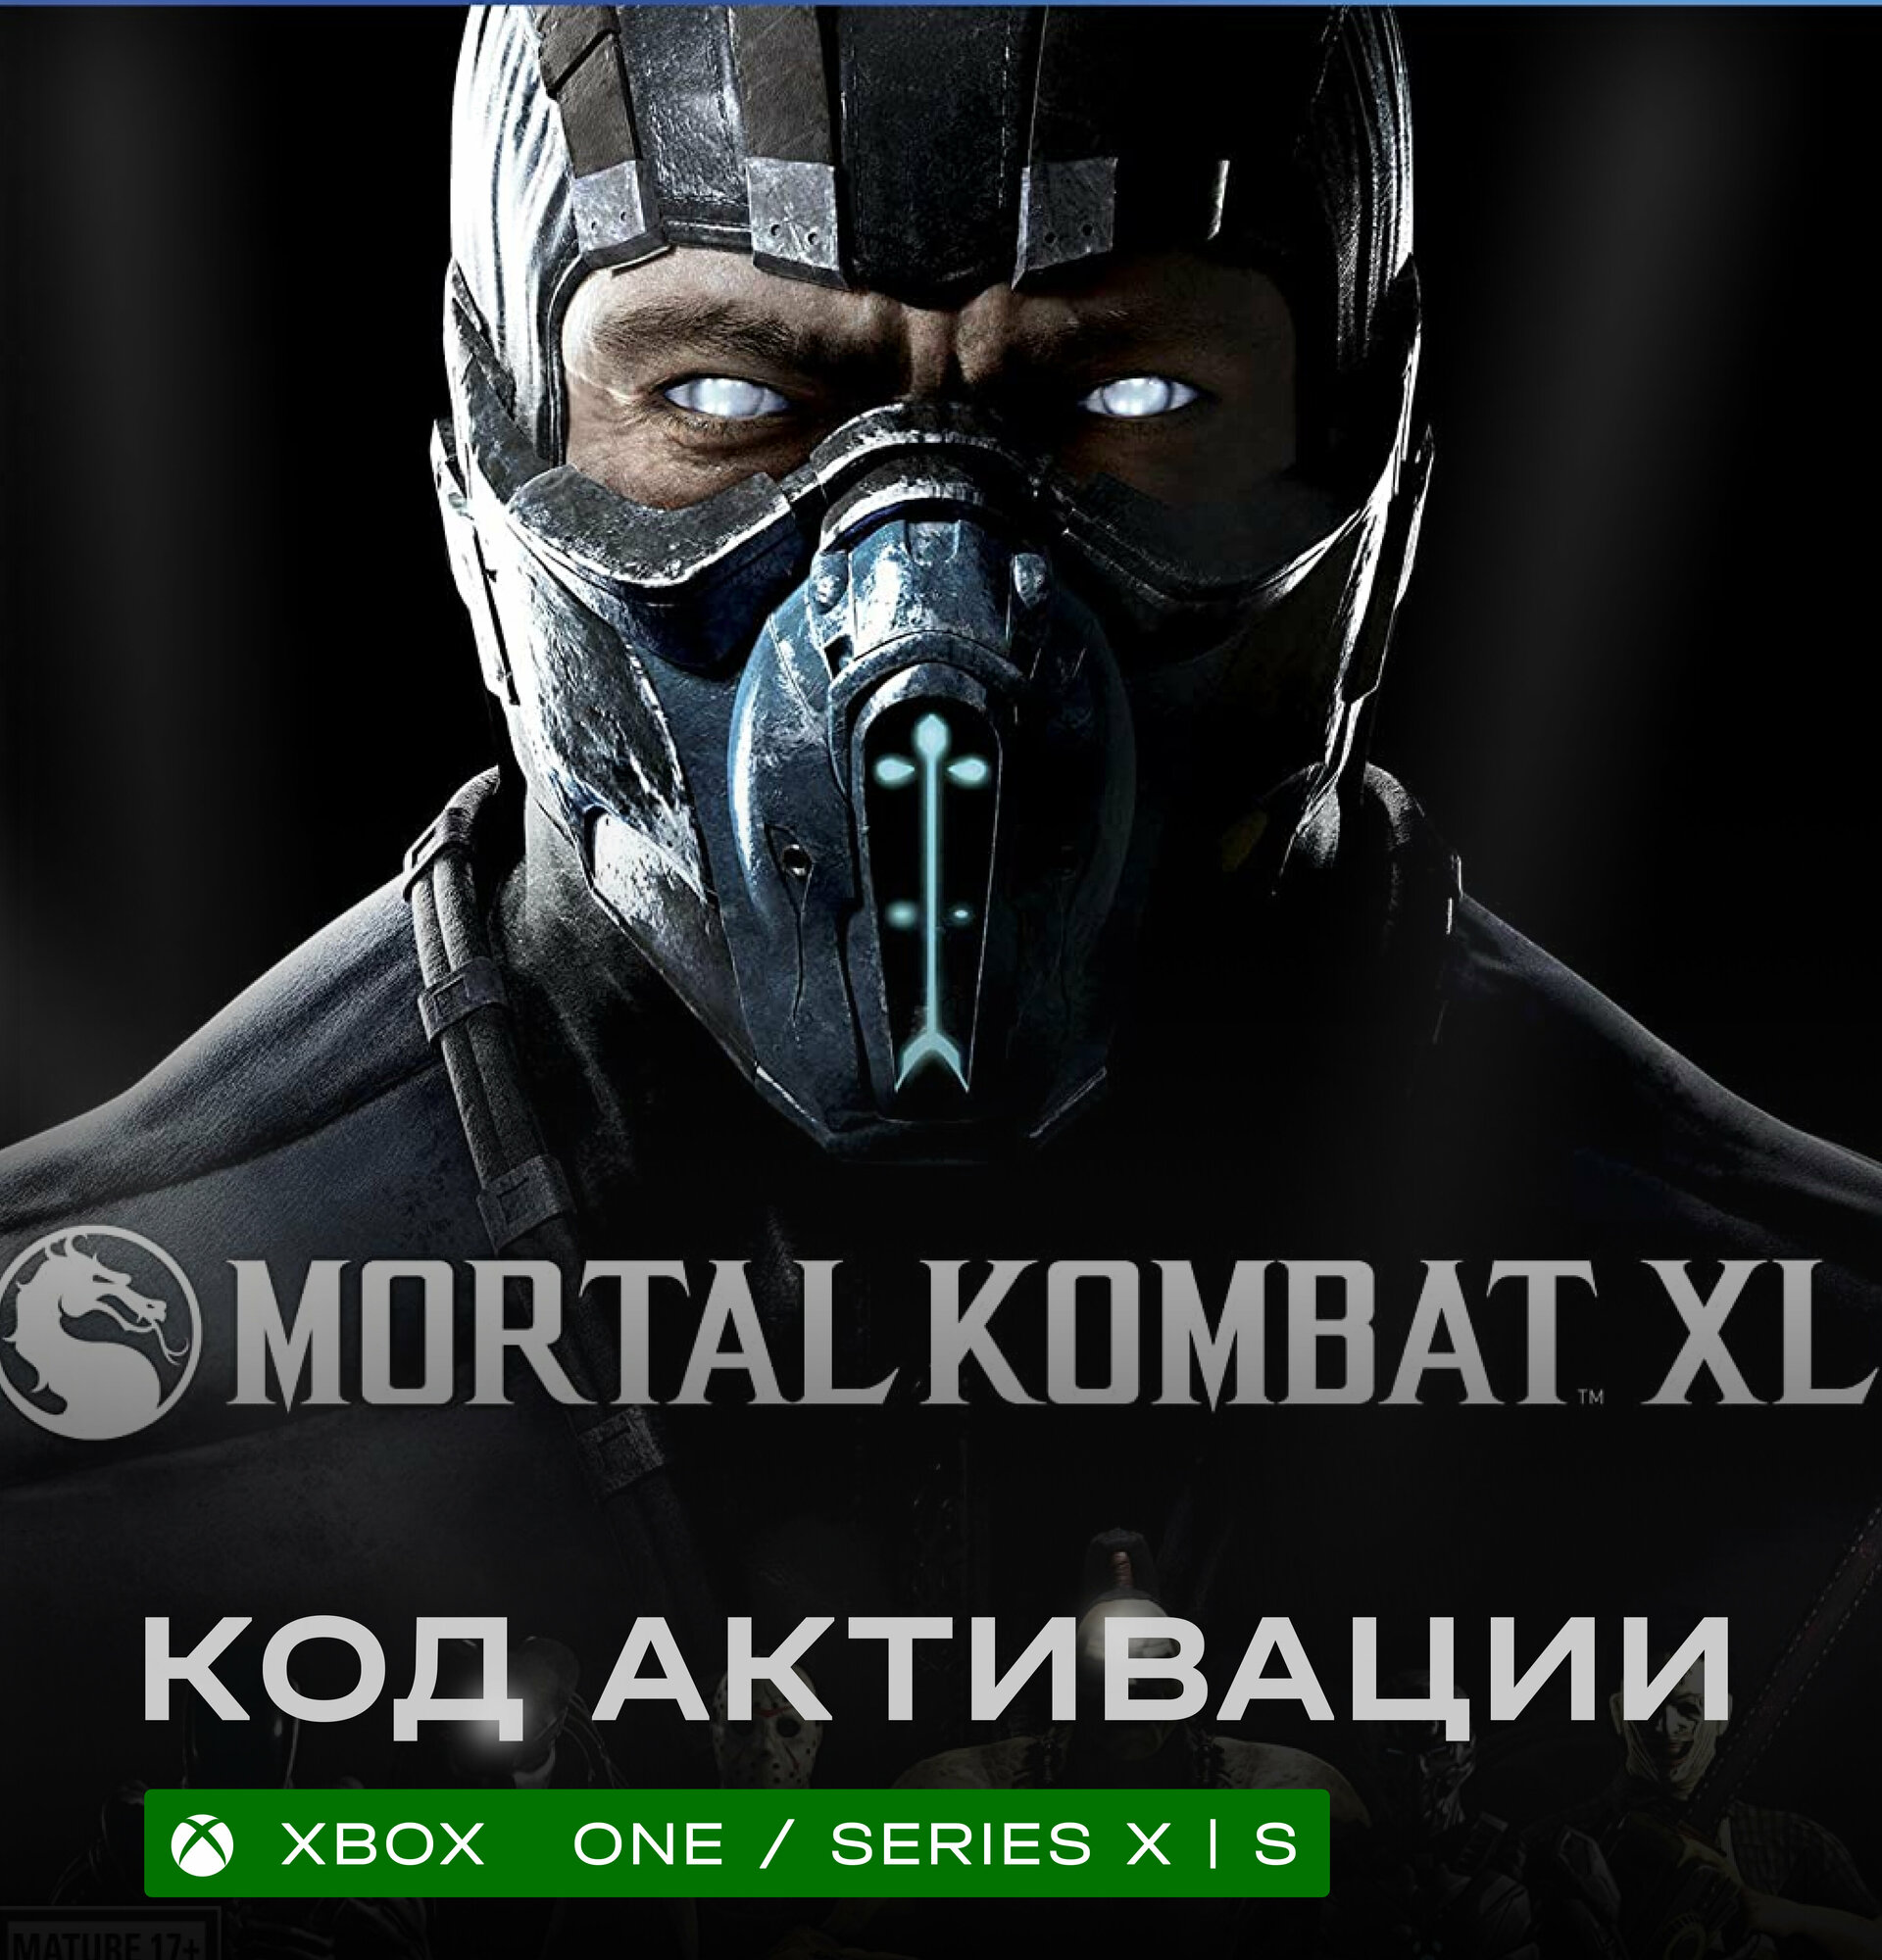 Игра Mortal Kombat XL для Xbox One / Series X|S (Аргентина/Турция), русские субтитры и интерфейс, электронный ключ